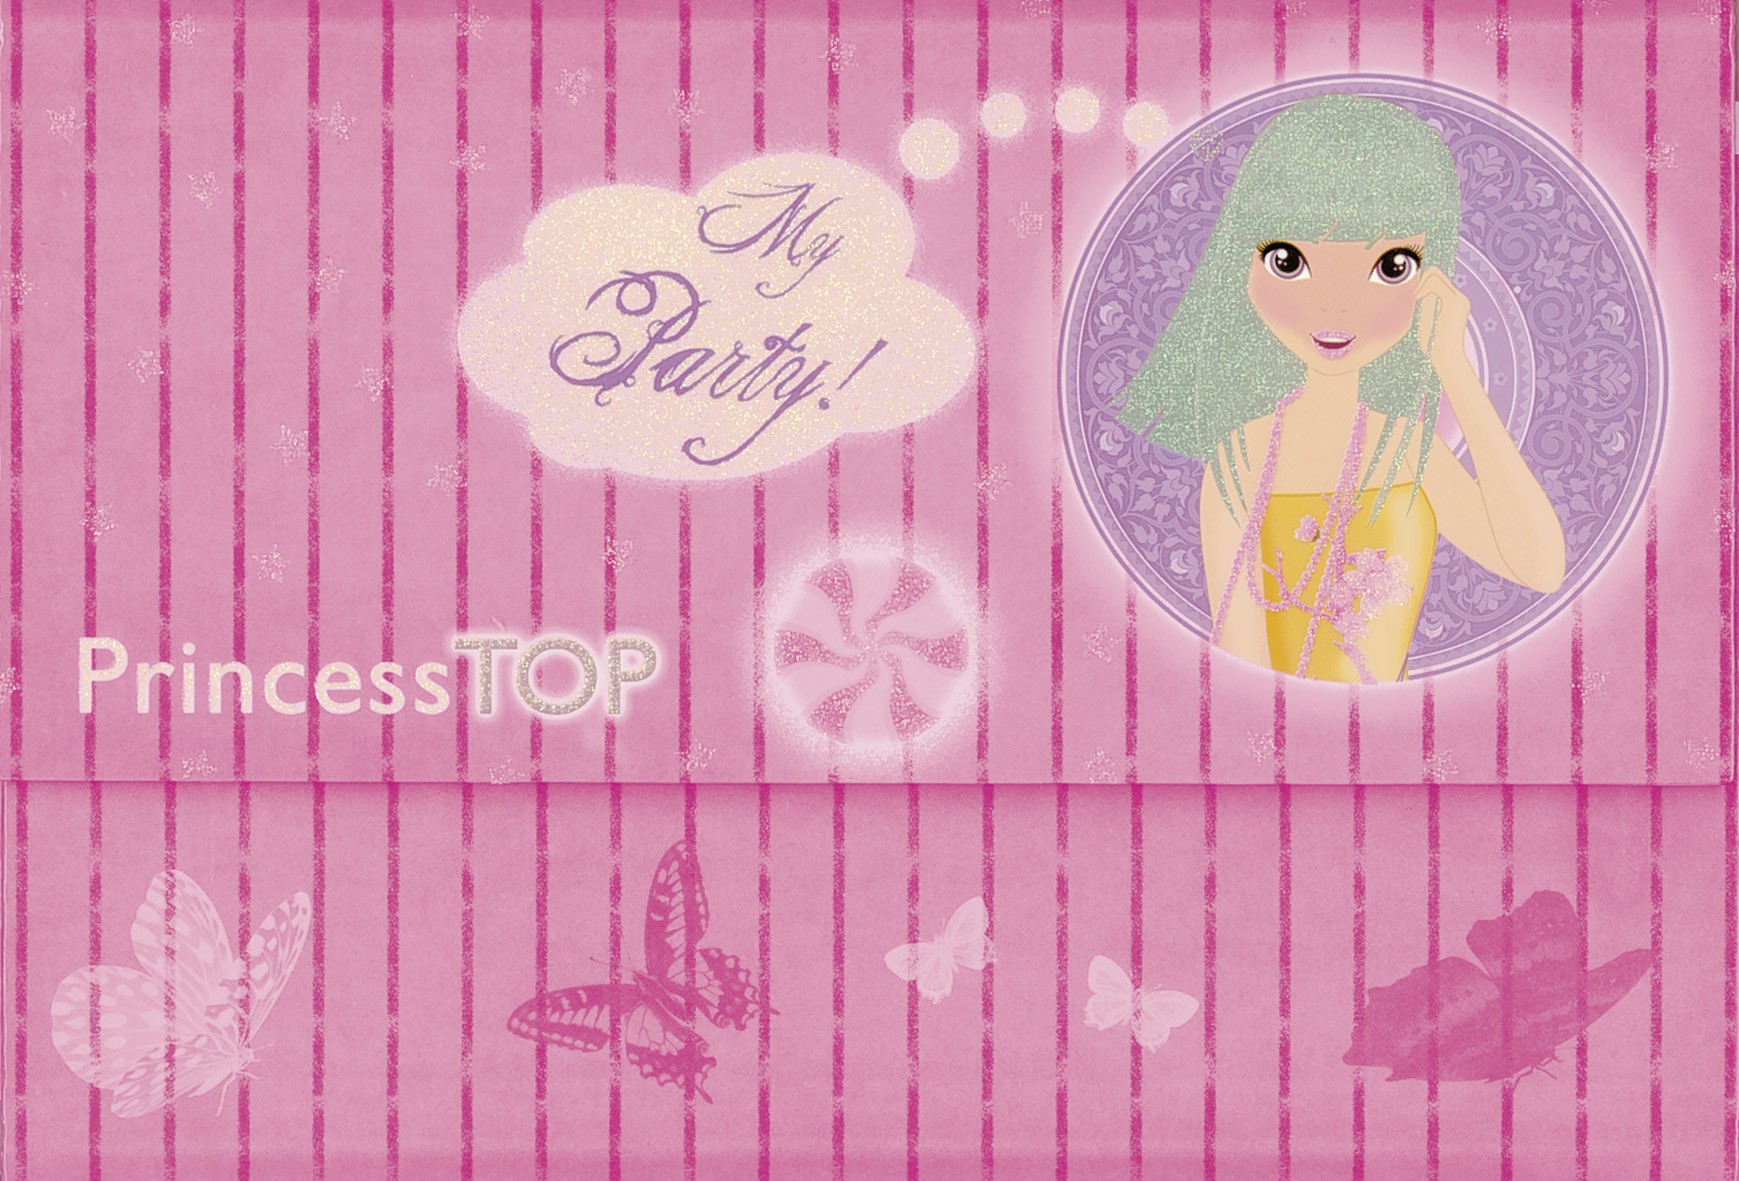 Princess TOP - My party (pink)